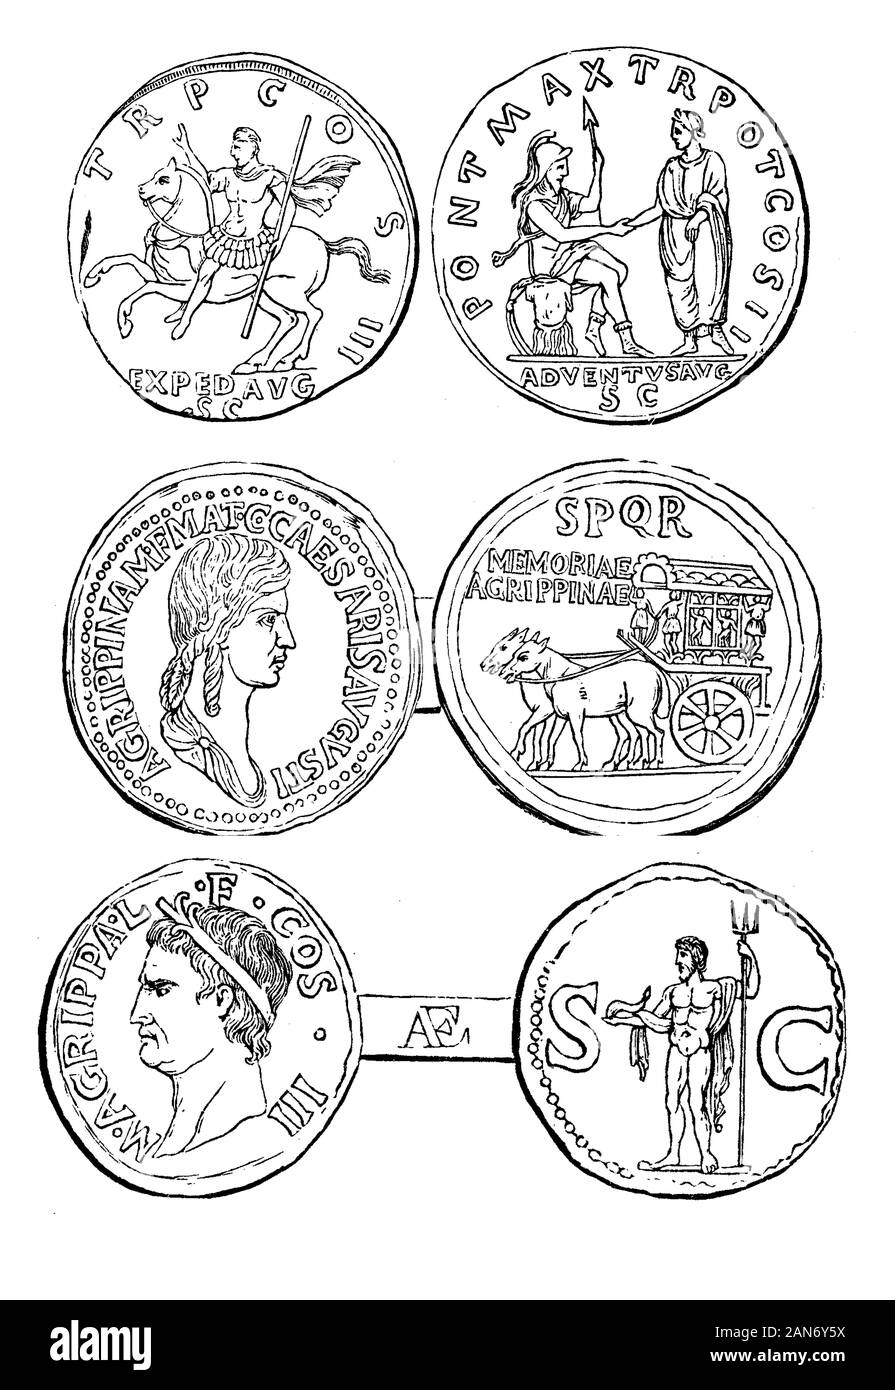 Antico romano medaglie con Marco Vipsanio Agrippa e politico romano Agrippina Maggiore di sua figlia e la moglie di Germanico prominente generale dell'Impero Romano Foto Stock